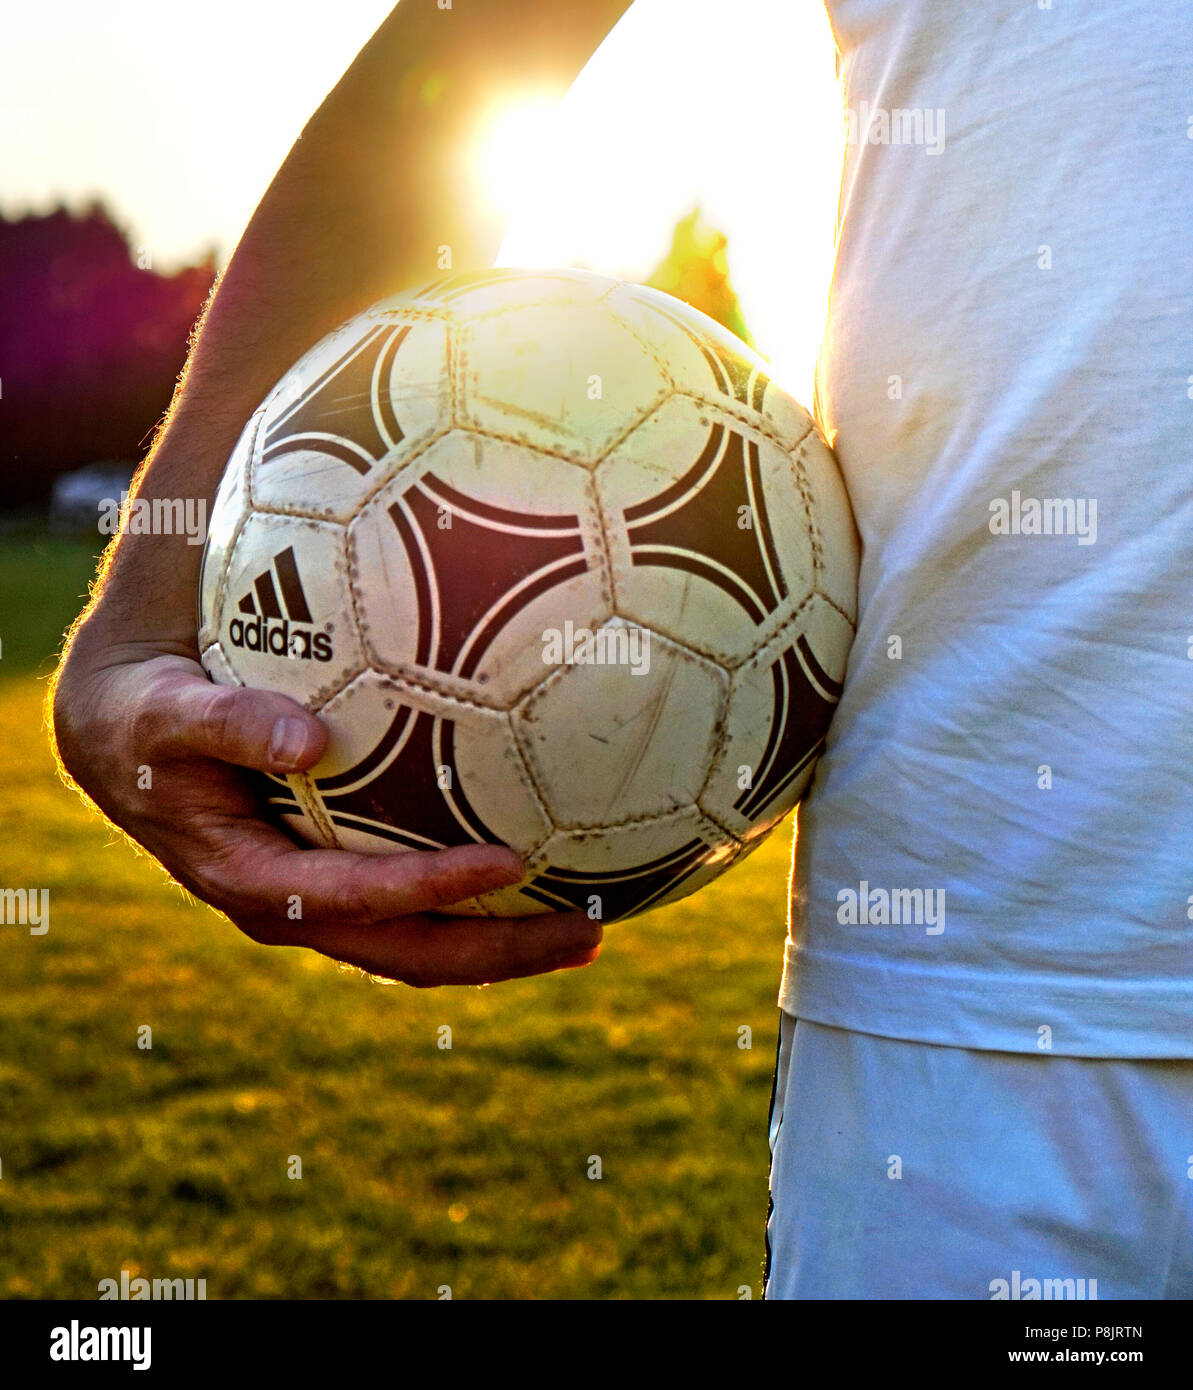 El futbolista mantiene su usado adidas tango ball en el campo Foto de stock